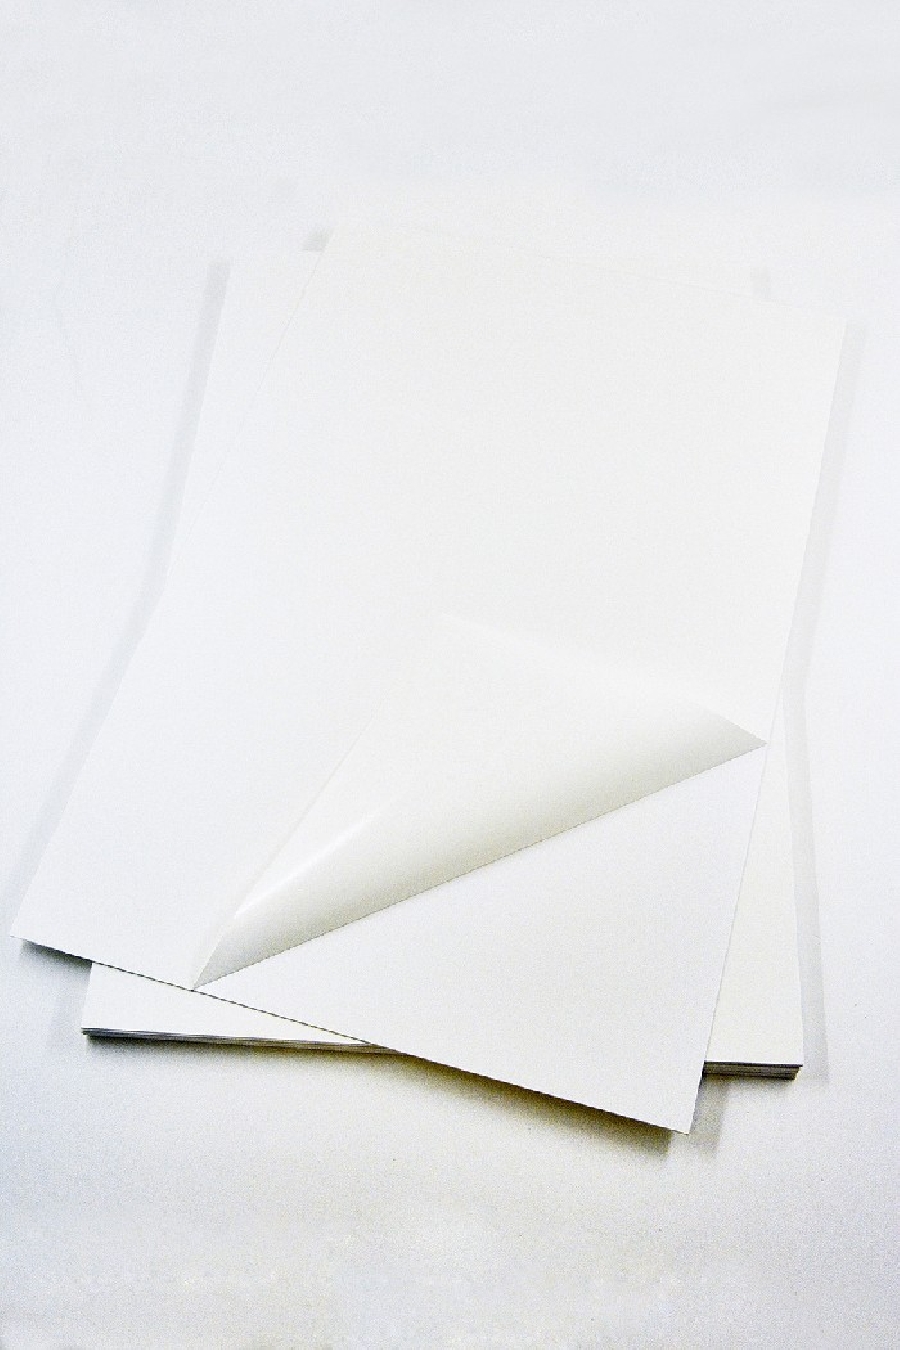 Пластик самоклеящийся двухсторонний (ПВХ лист) 1,5мм 21x31см белый